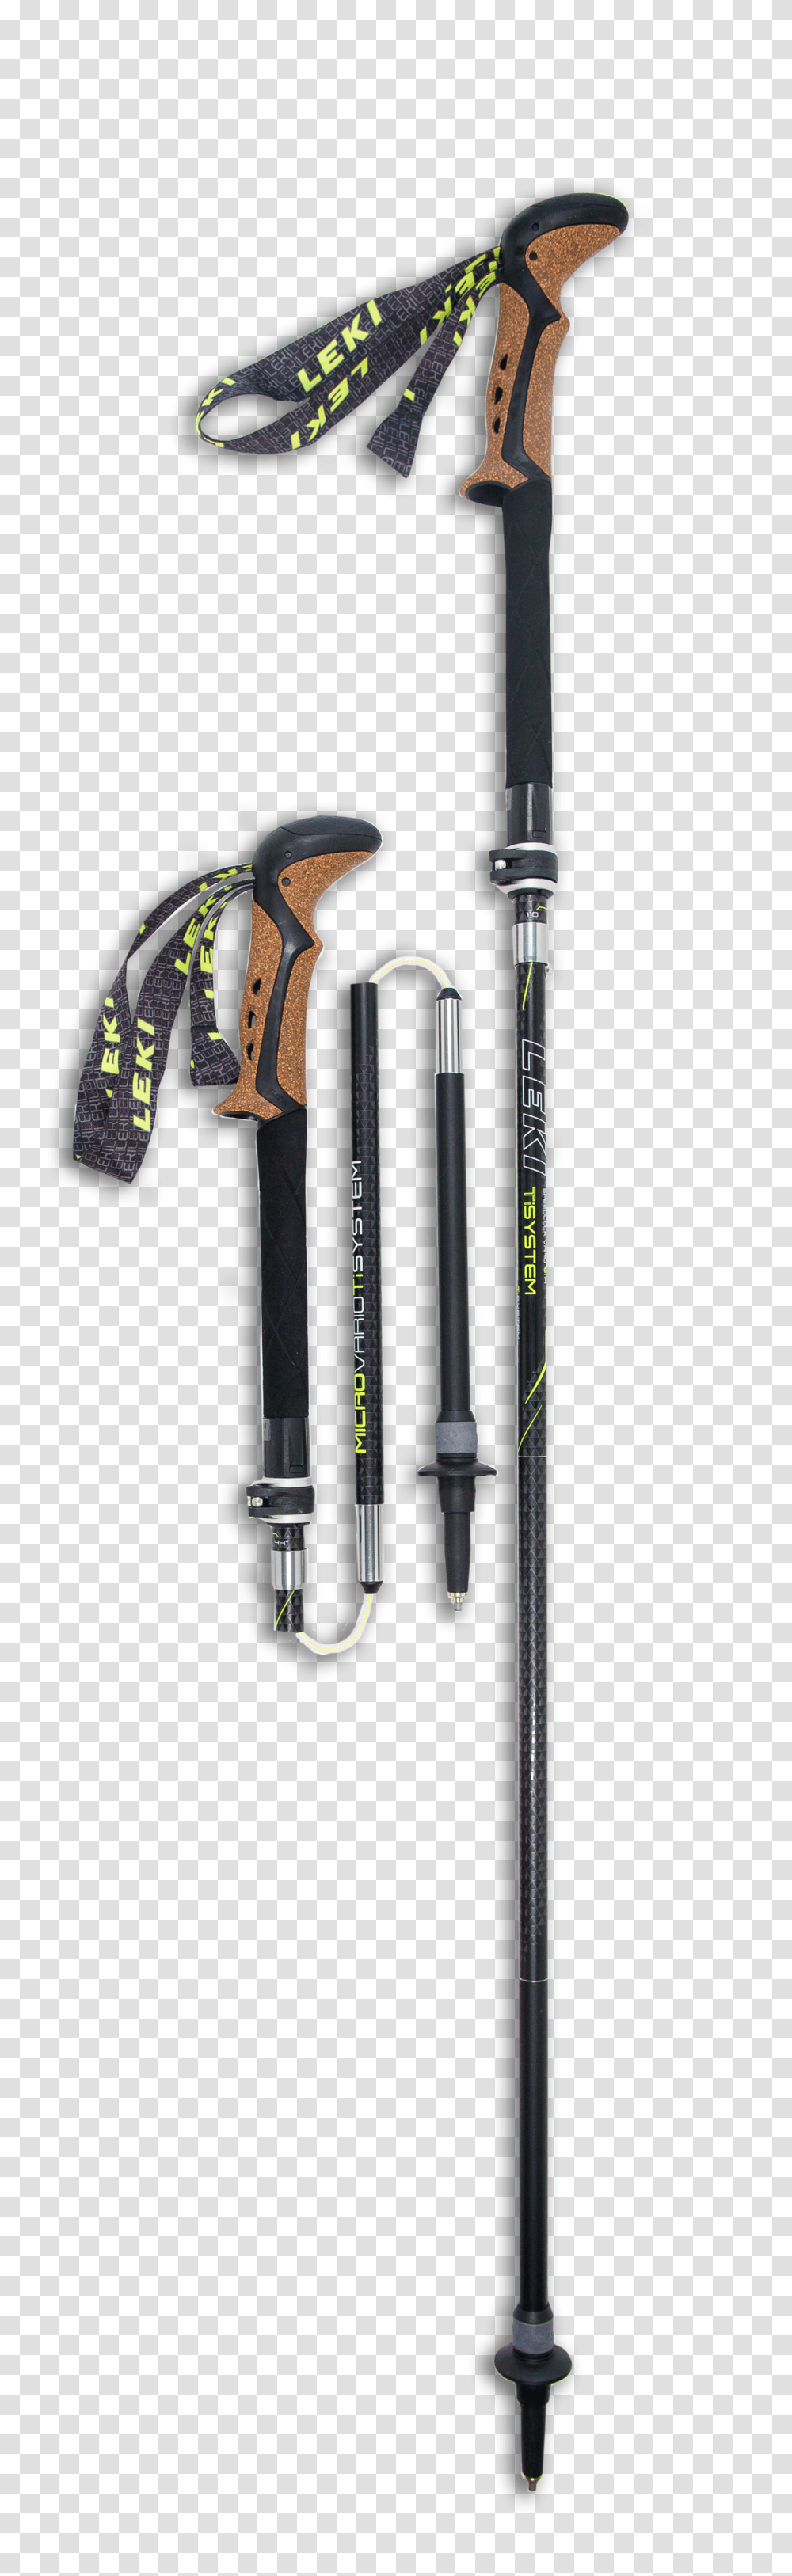 Trekking Pole, Sport, Cane, Stick, Shower Faucet Transparent Png